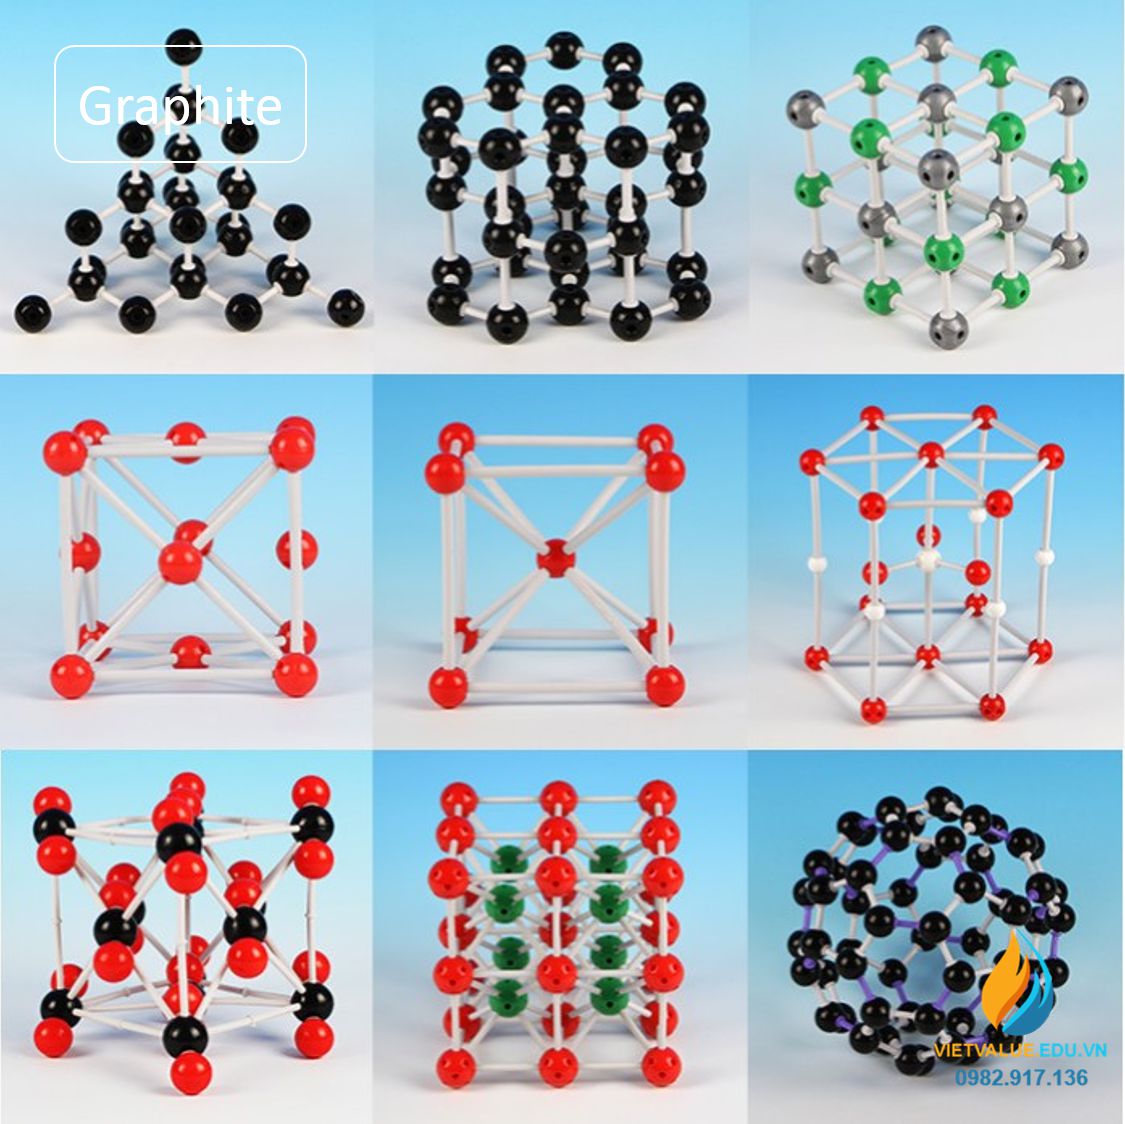 Mô hình phân tử Graphite, than chì, mô hình phân tử hóa học